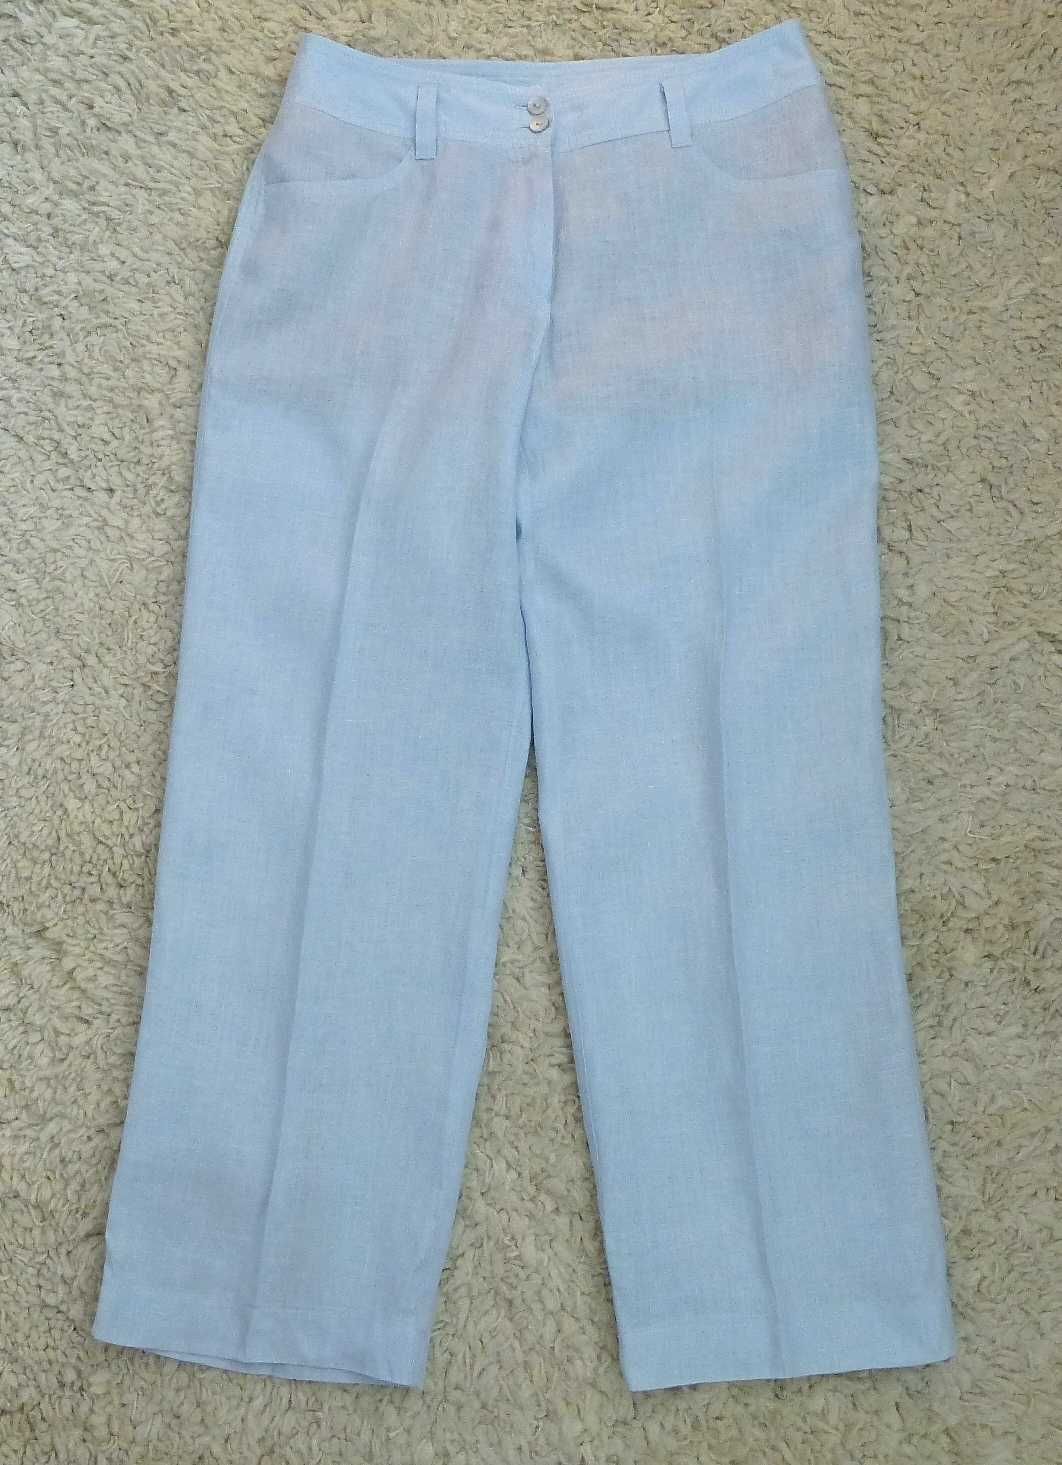 Savannah damskie lniane spodnie na kant S M